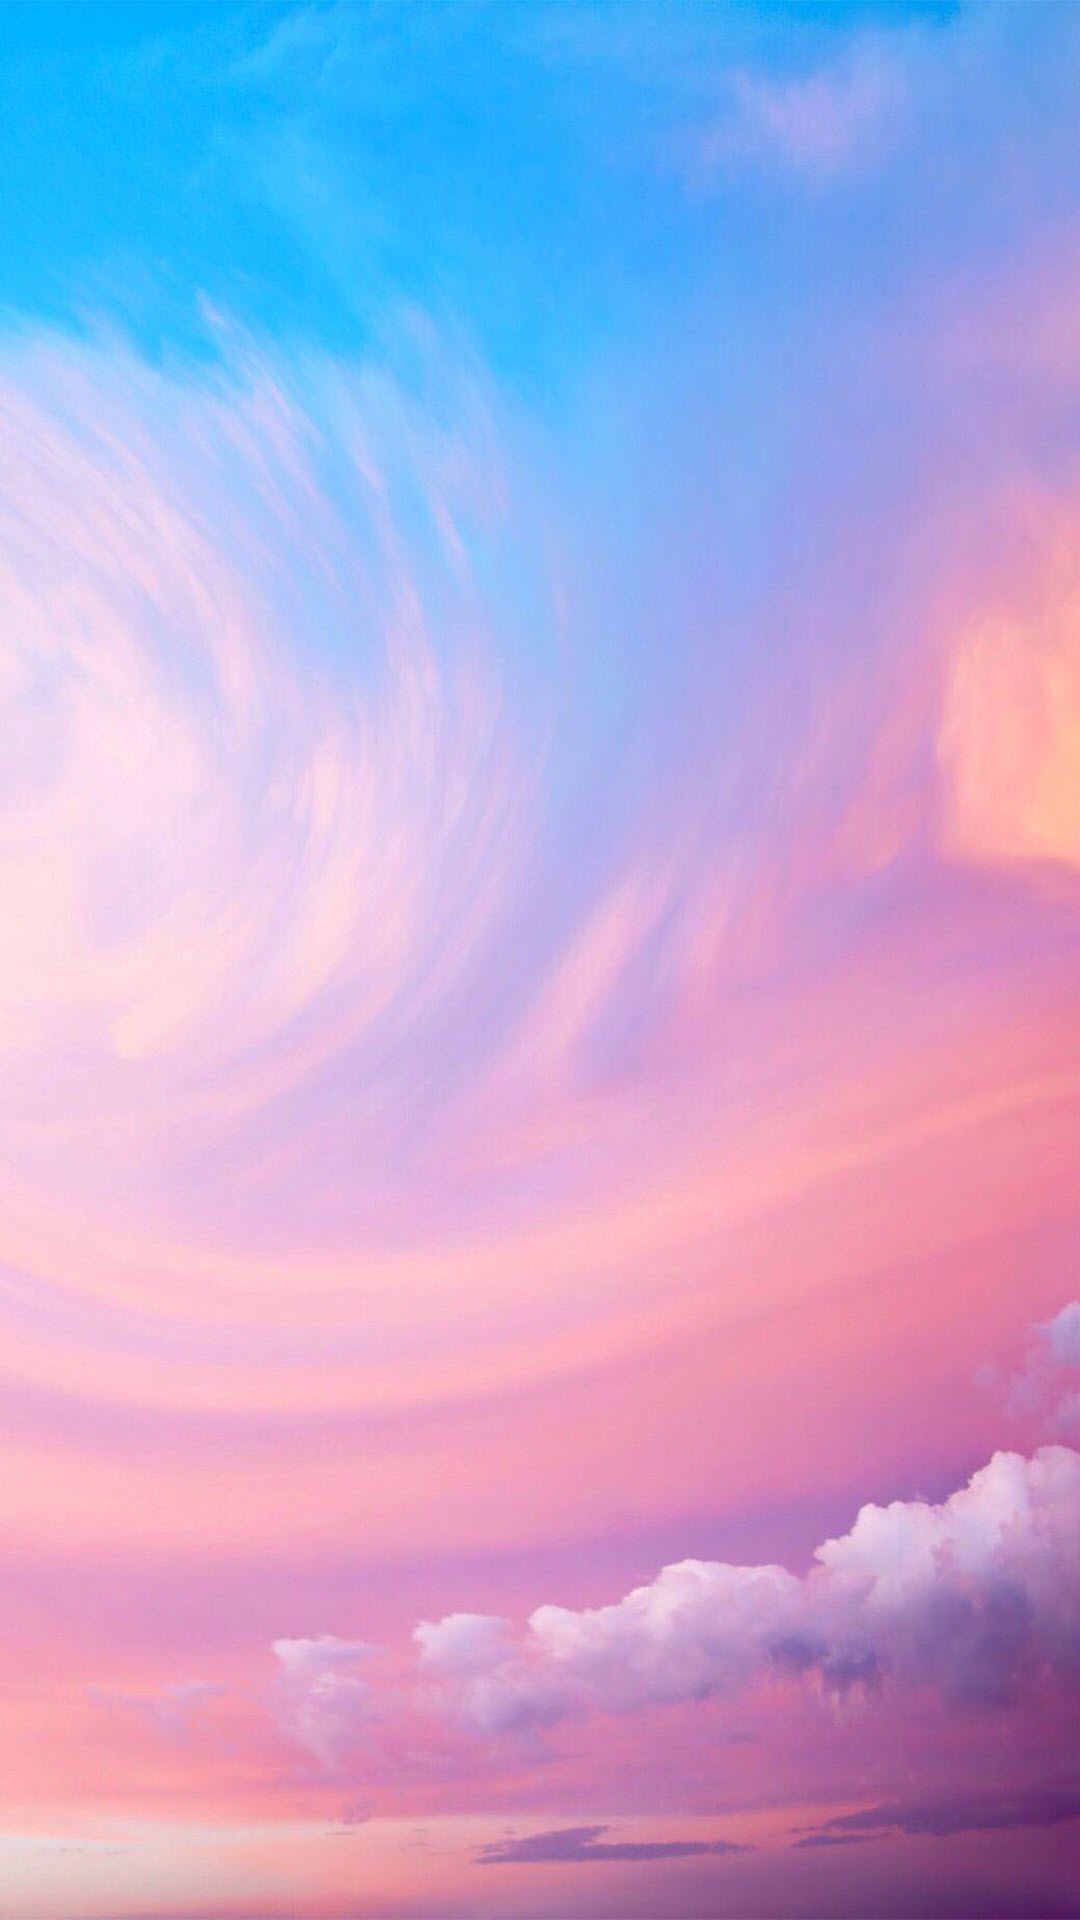 Hình nền: Nếu bạn đang tìm kiếm một hình nền bầu trời đầy màu sắc, thì bức ảnh này là sự lựa chọn hoàn hảo. Với những đám mây và bầu trời vô cùng đẹp mắt, hình nền này sẽ giúp bạn thư giãn và tạo cảm hứng cho ngày mới.